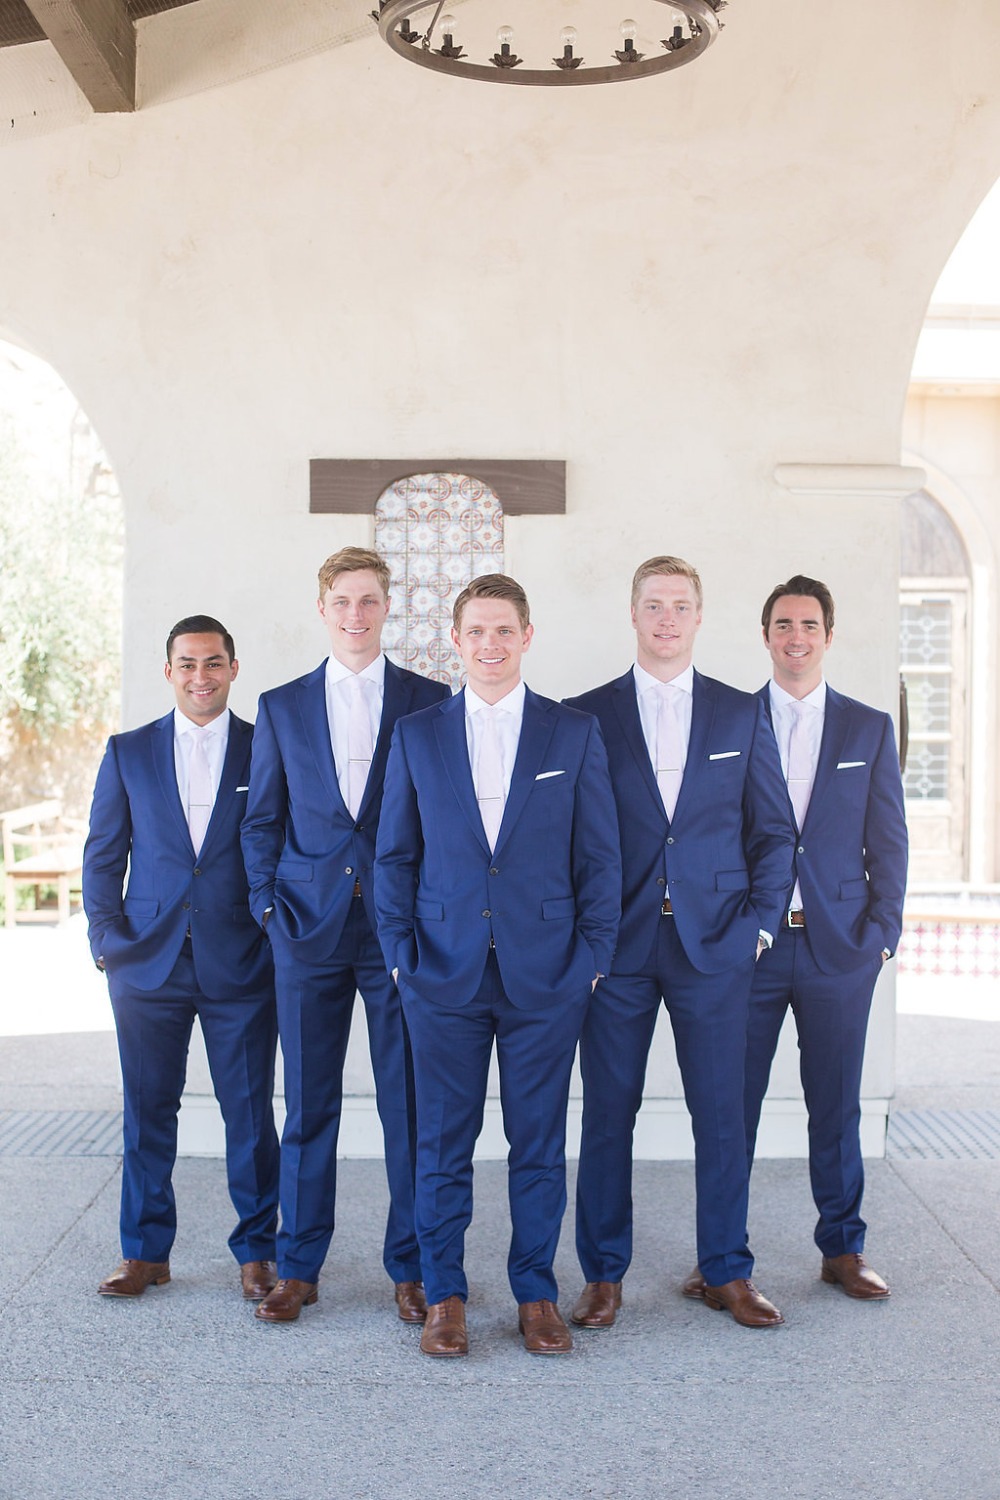 sharp looking groomsmen in matching navy suits